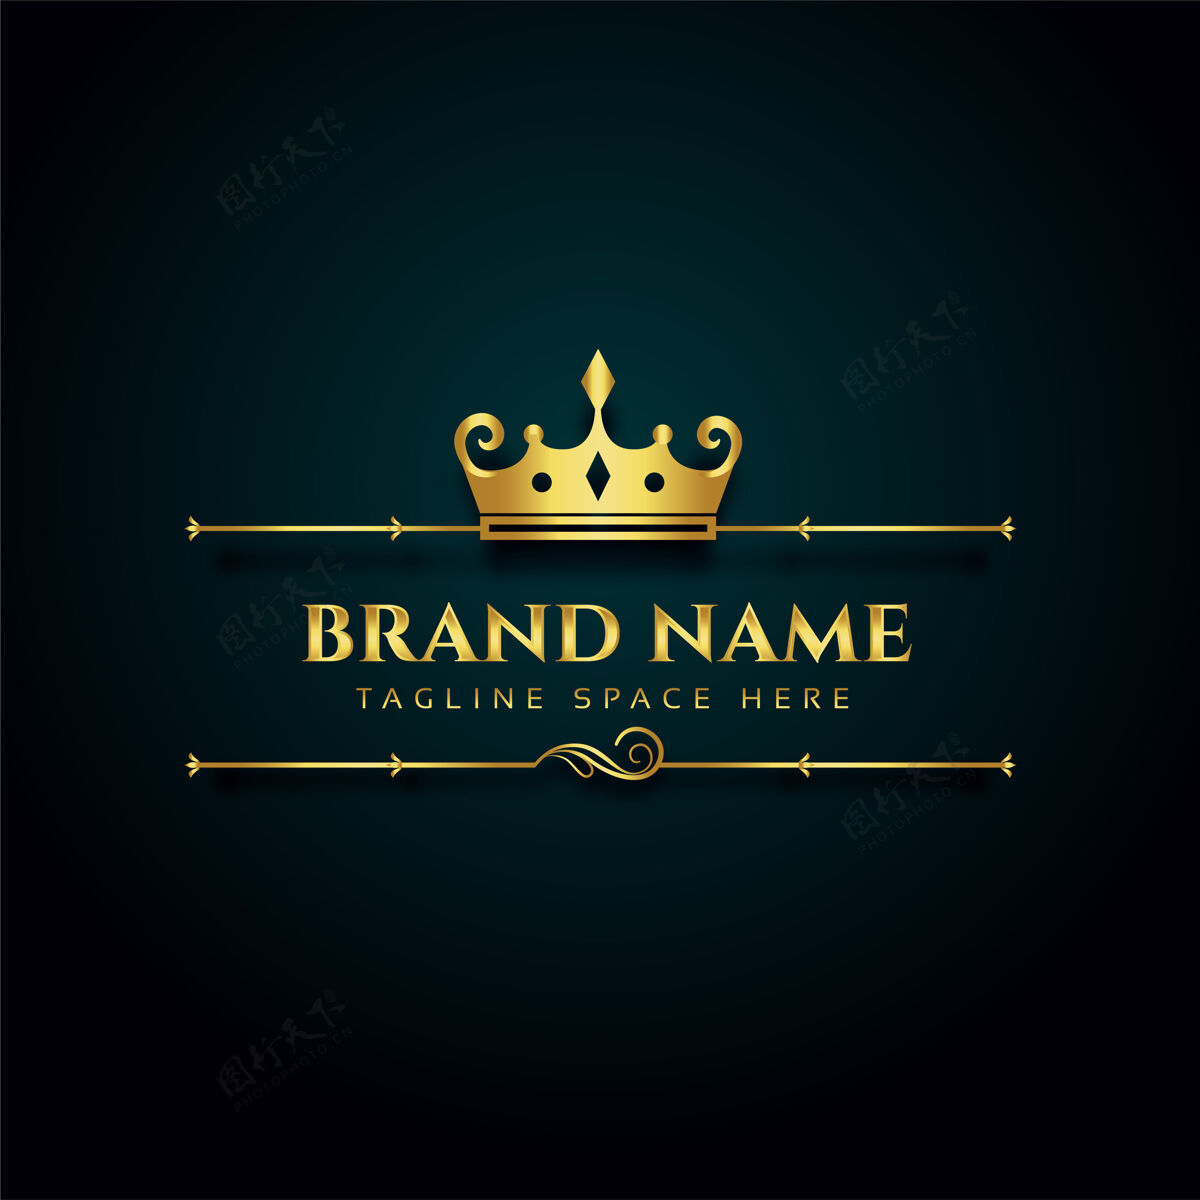 豪华豪华品牌标志 金色皇冠设计缩写头饰国王